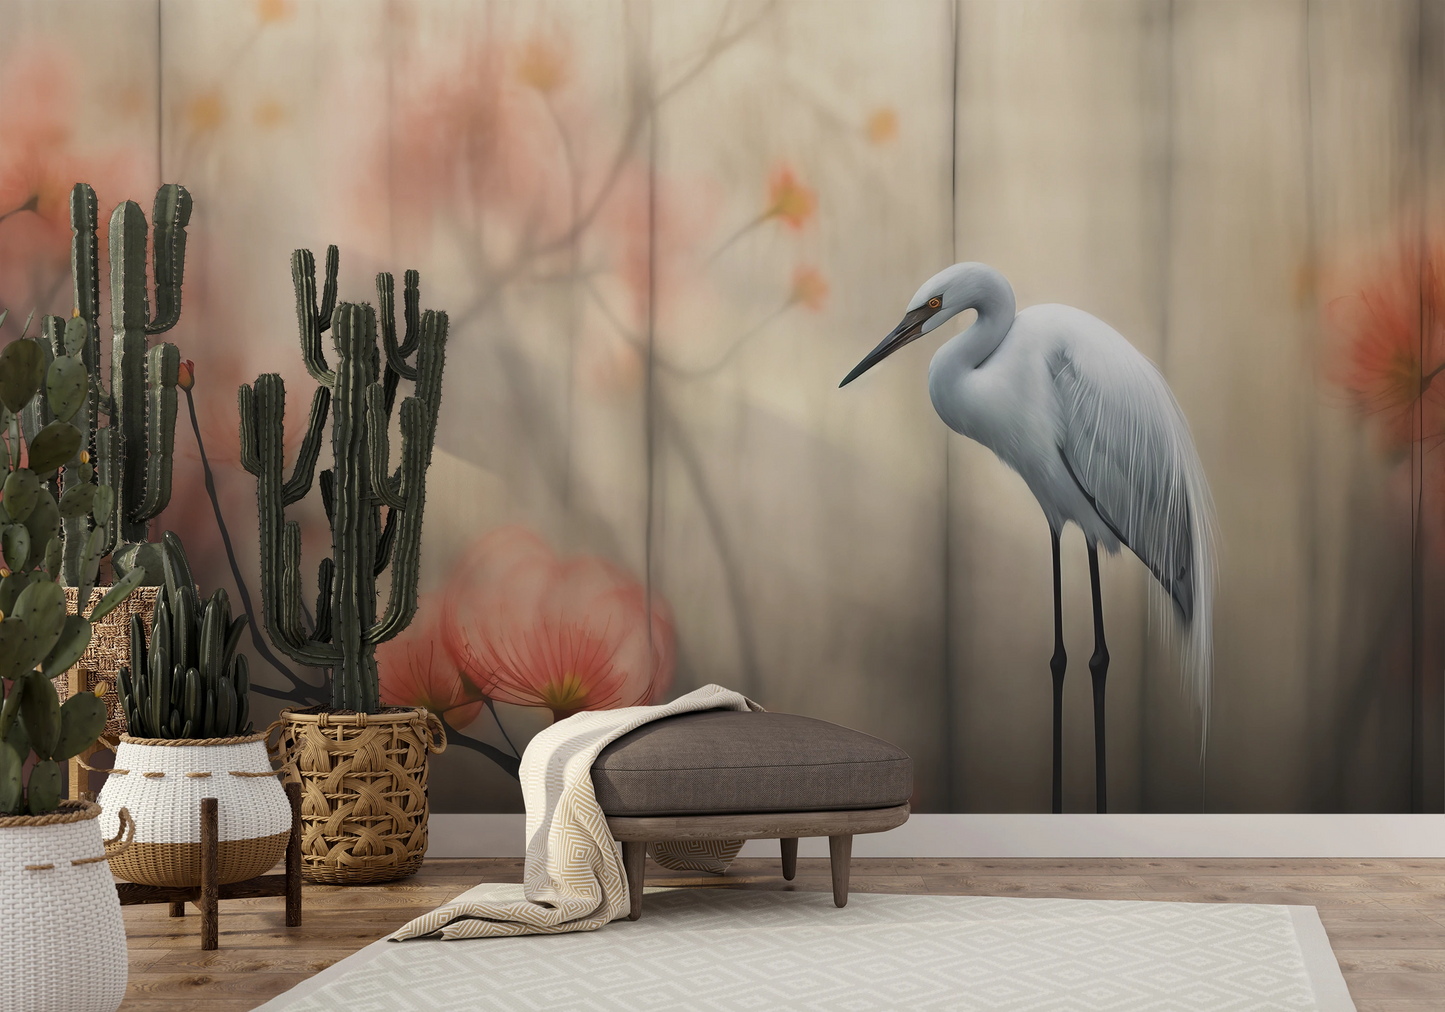 Wzór fototapety malowanej o nazwie Solitary Heron pokazanej w aranżacji wnętrza.